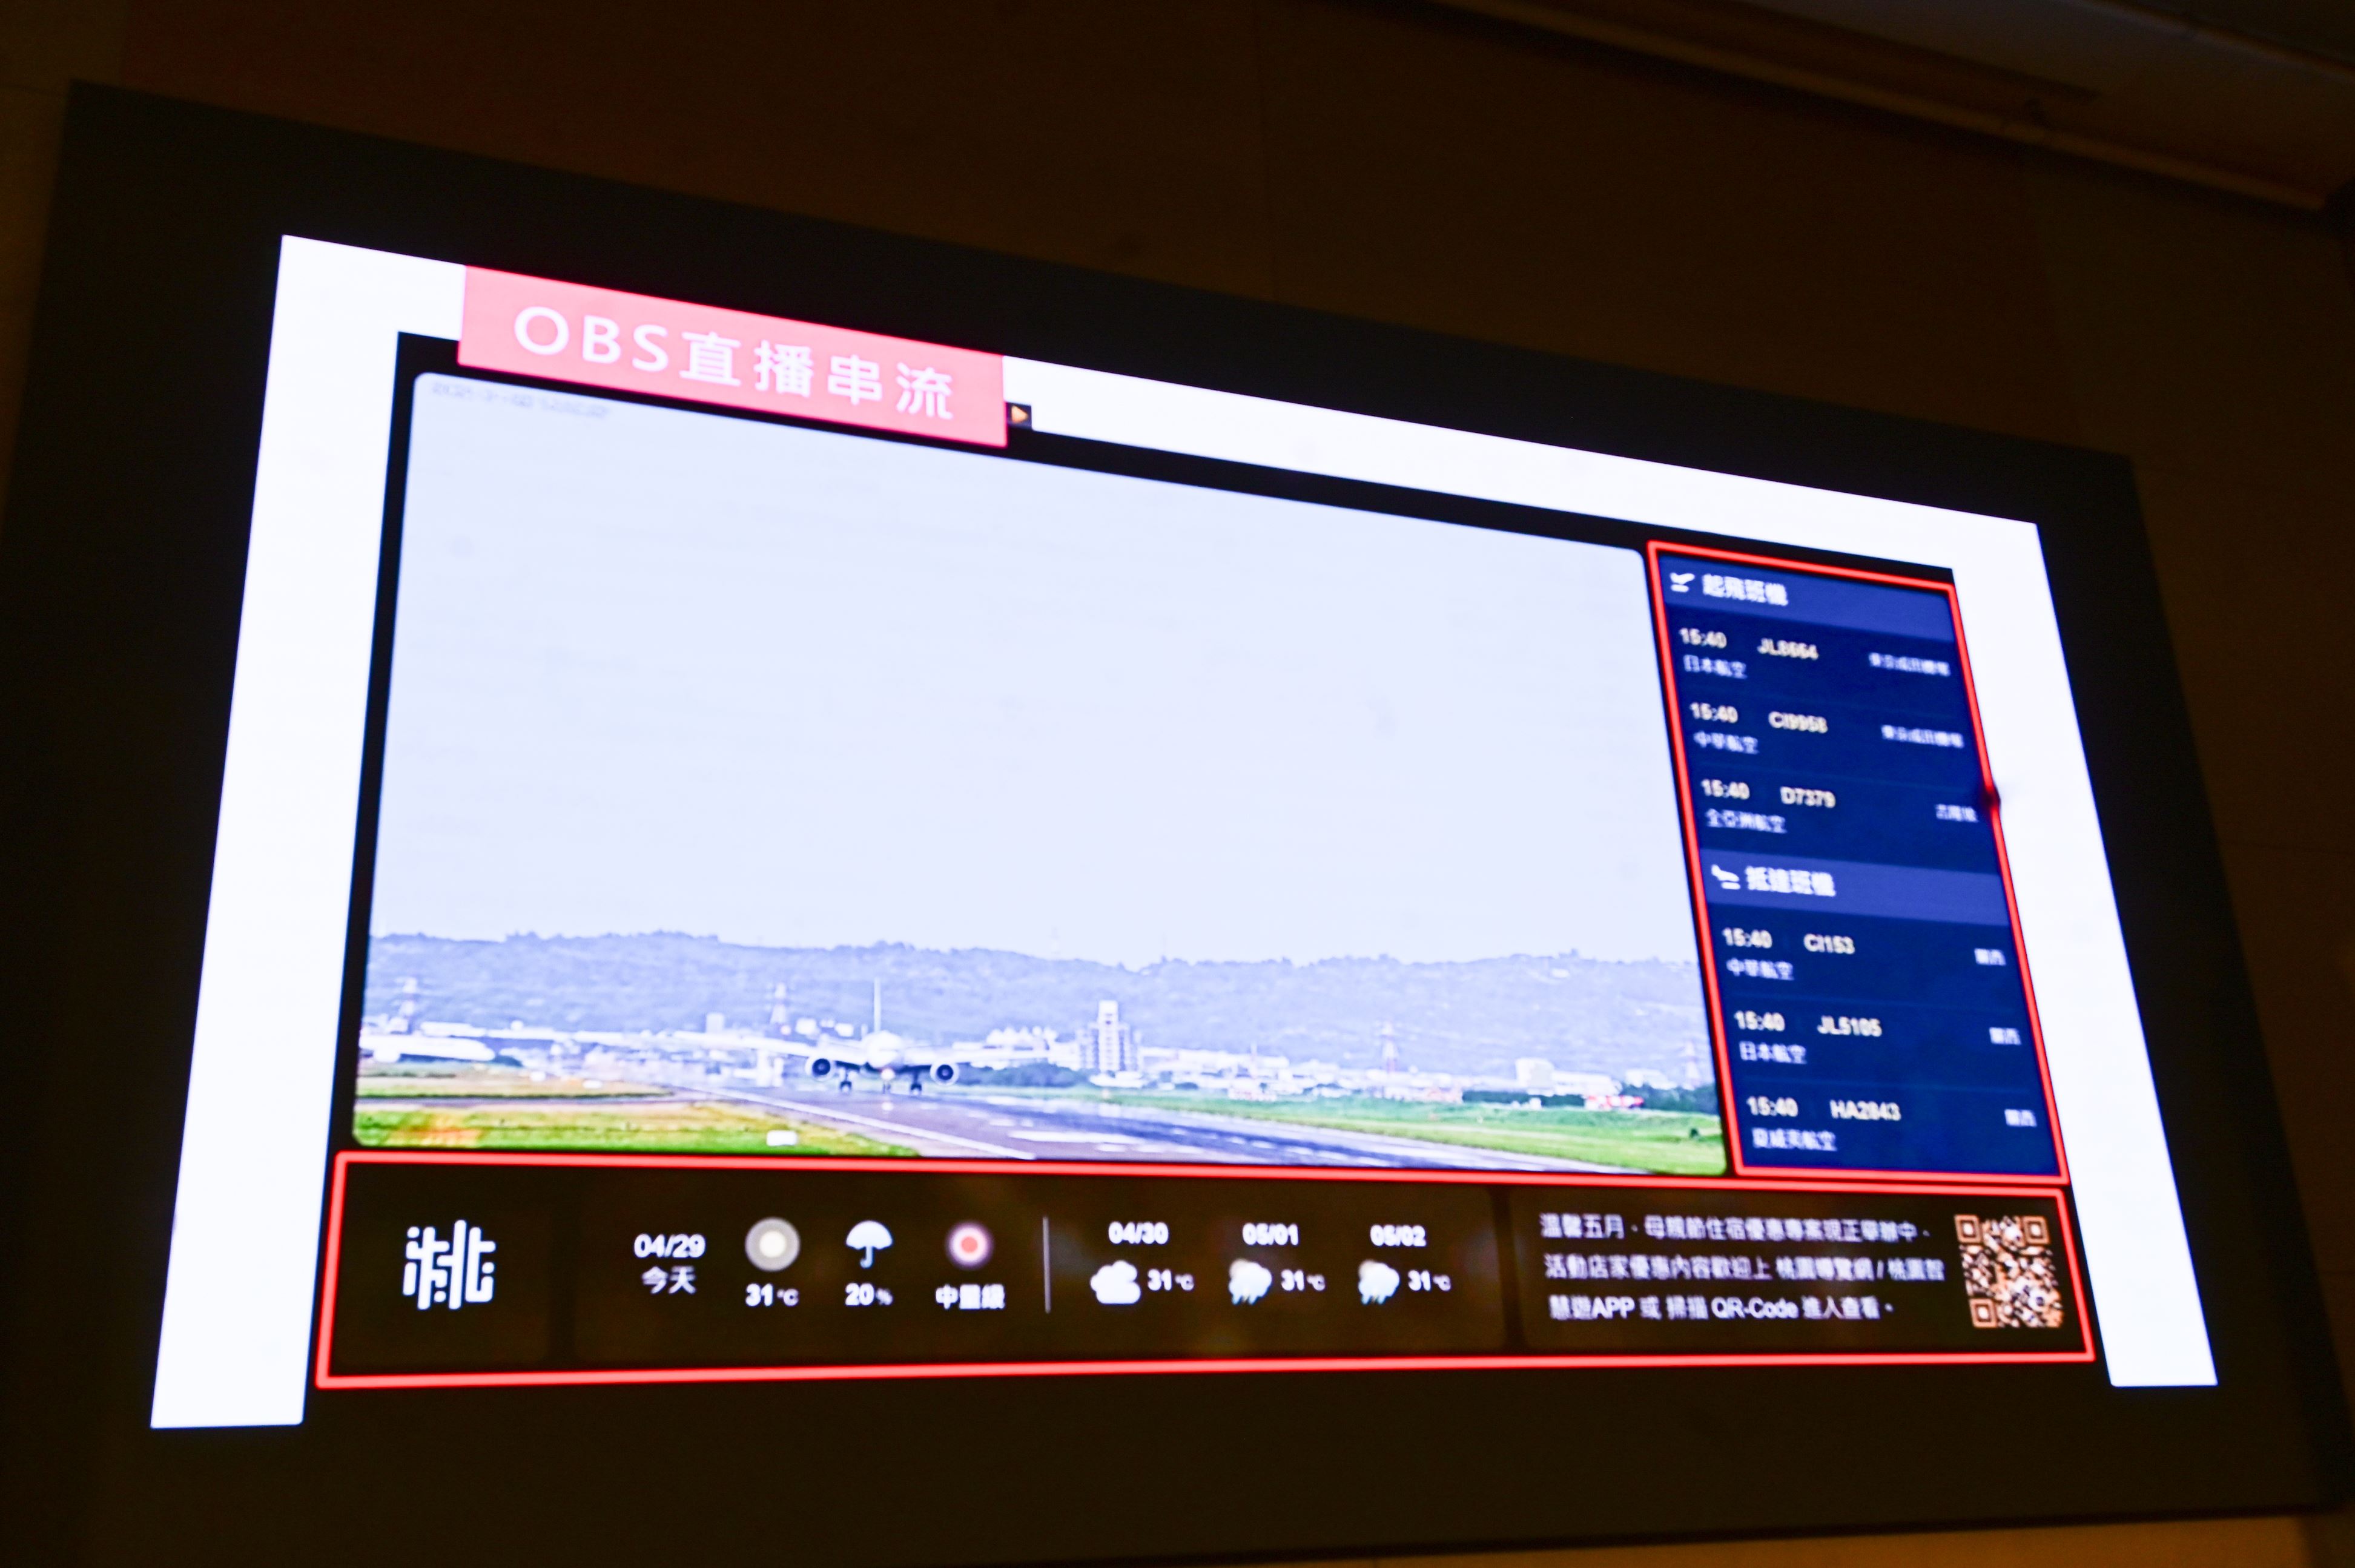 諾富特機場即時影像正式啟用